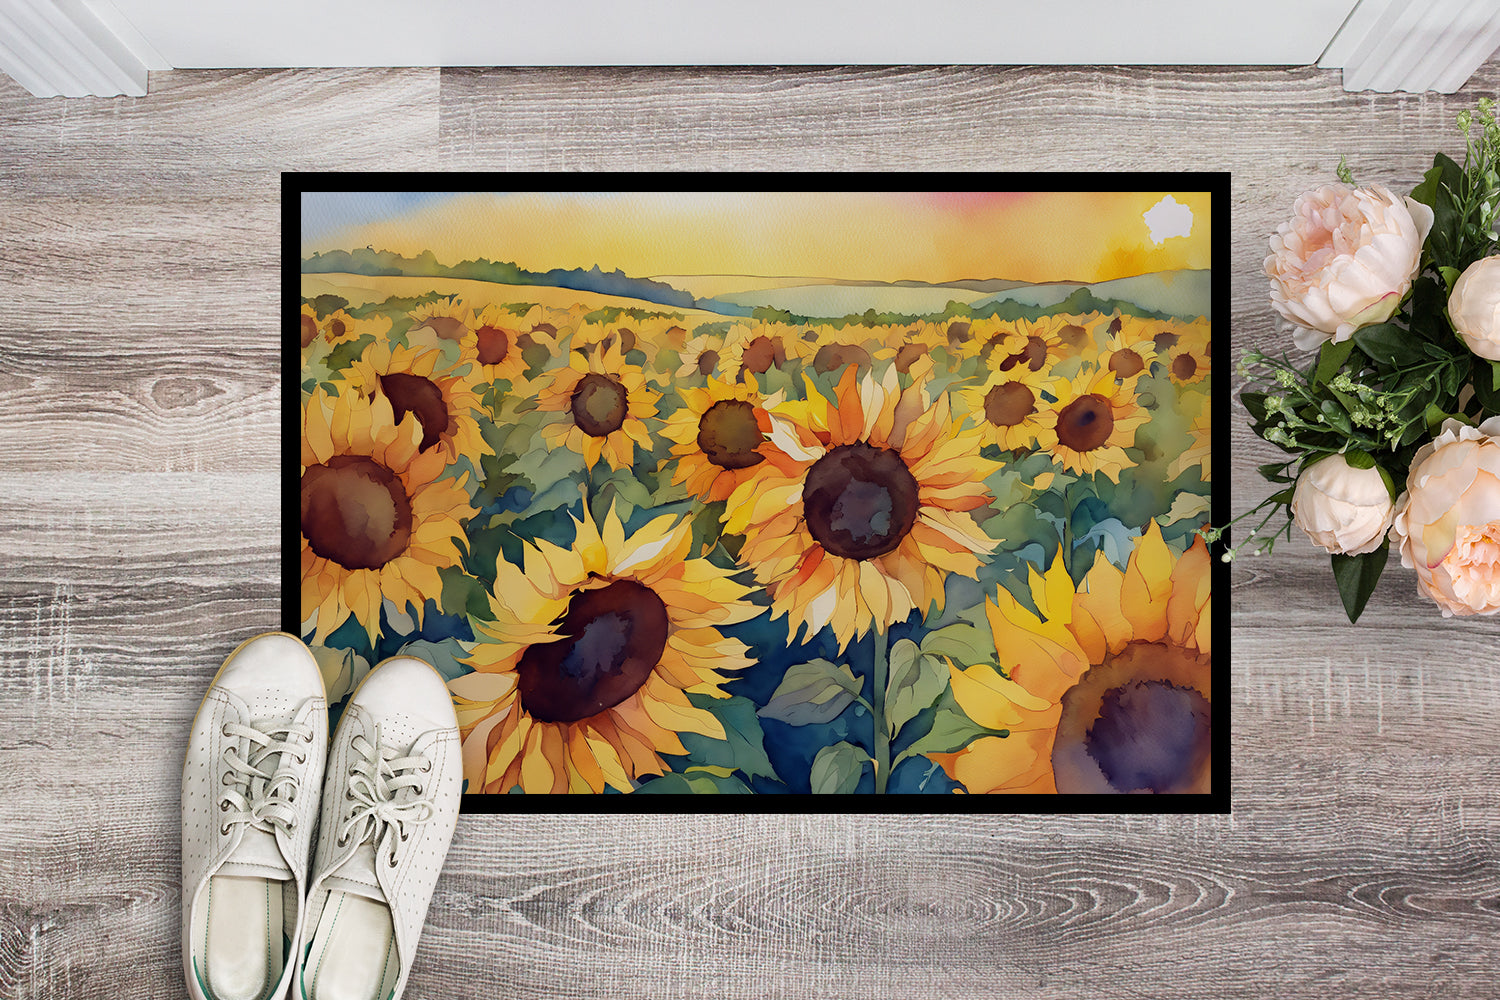 Buy this Kansas Sunflowers in Watercolor Doormat 18x27